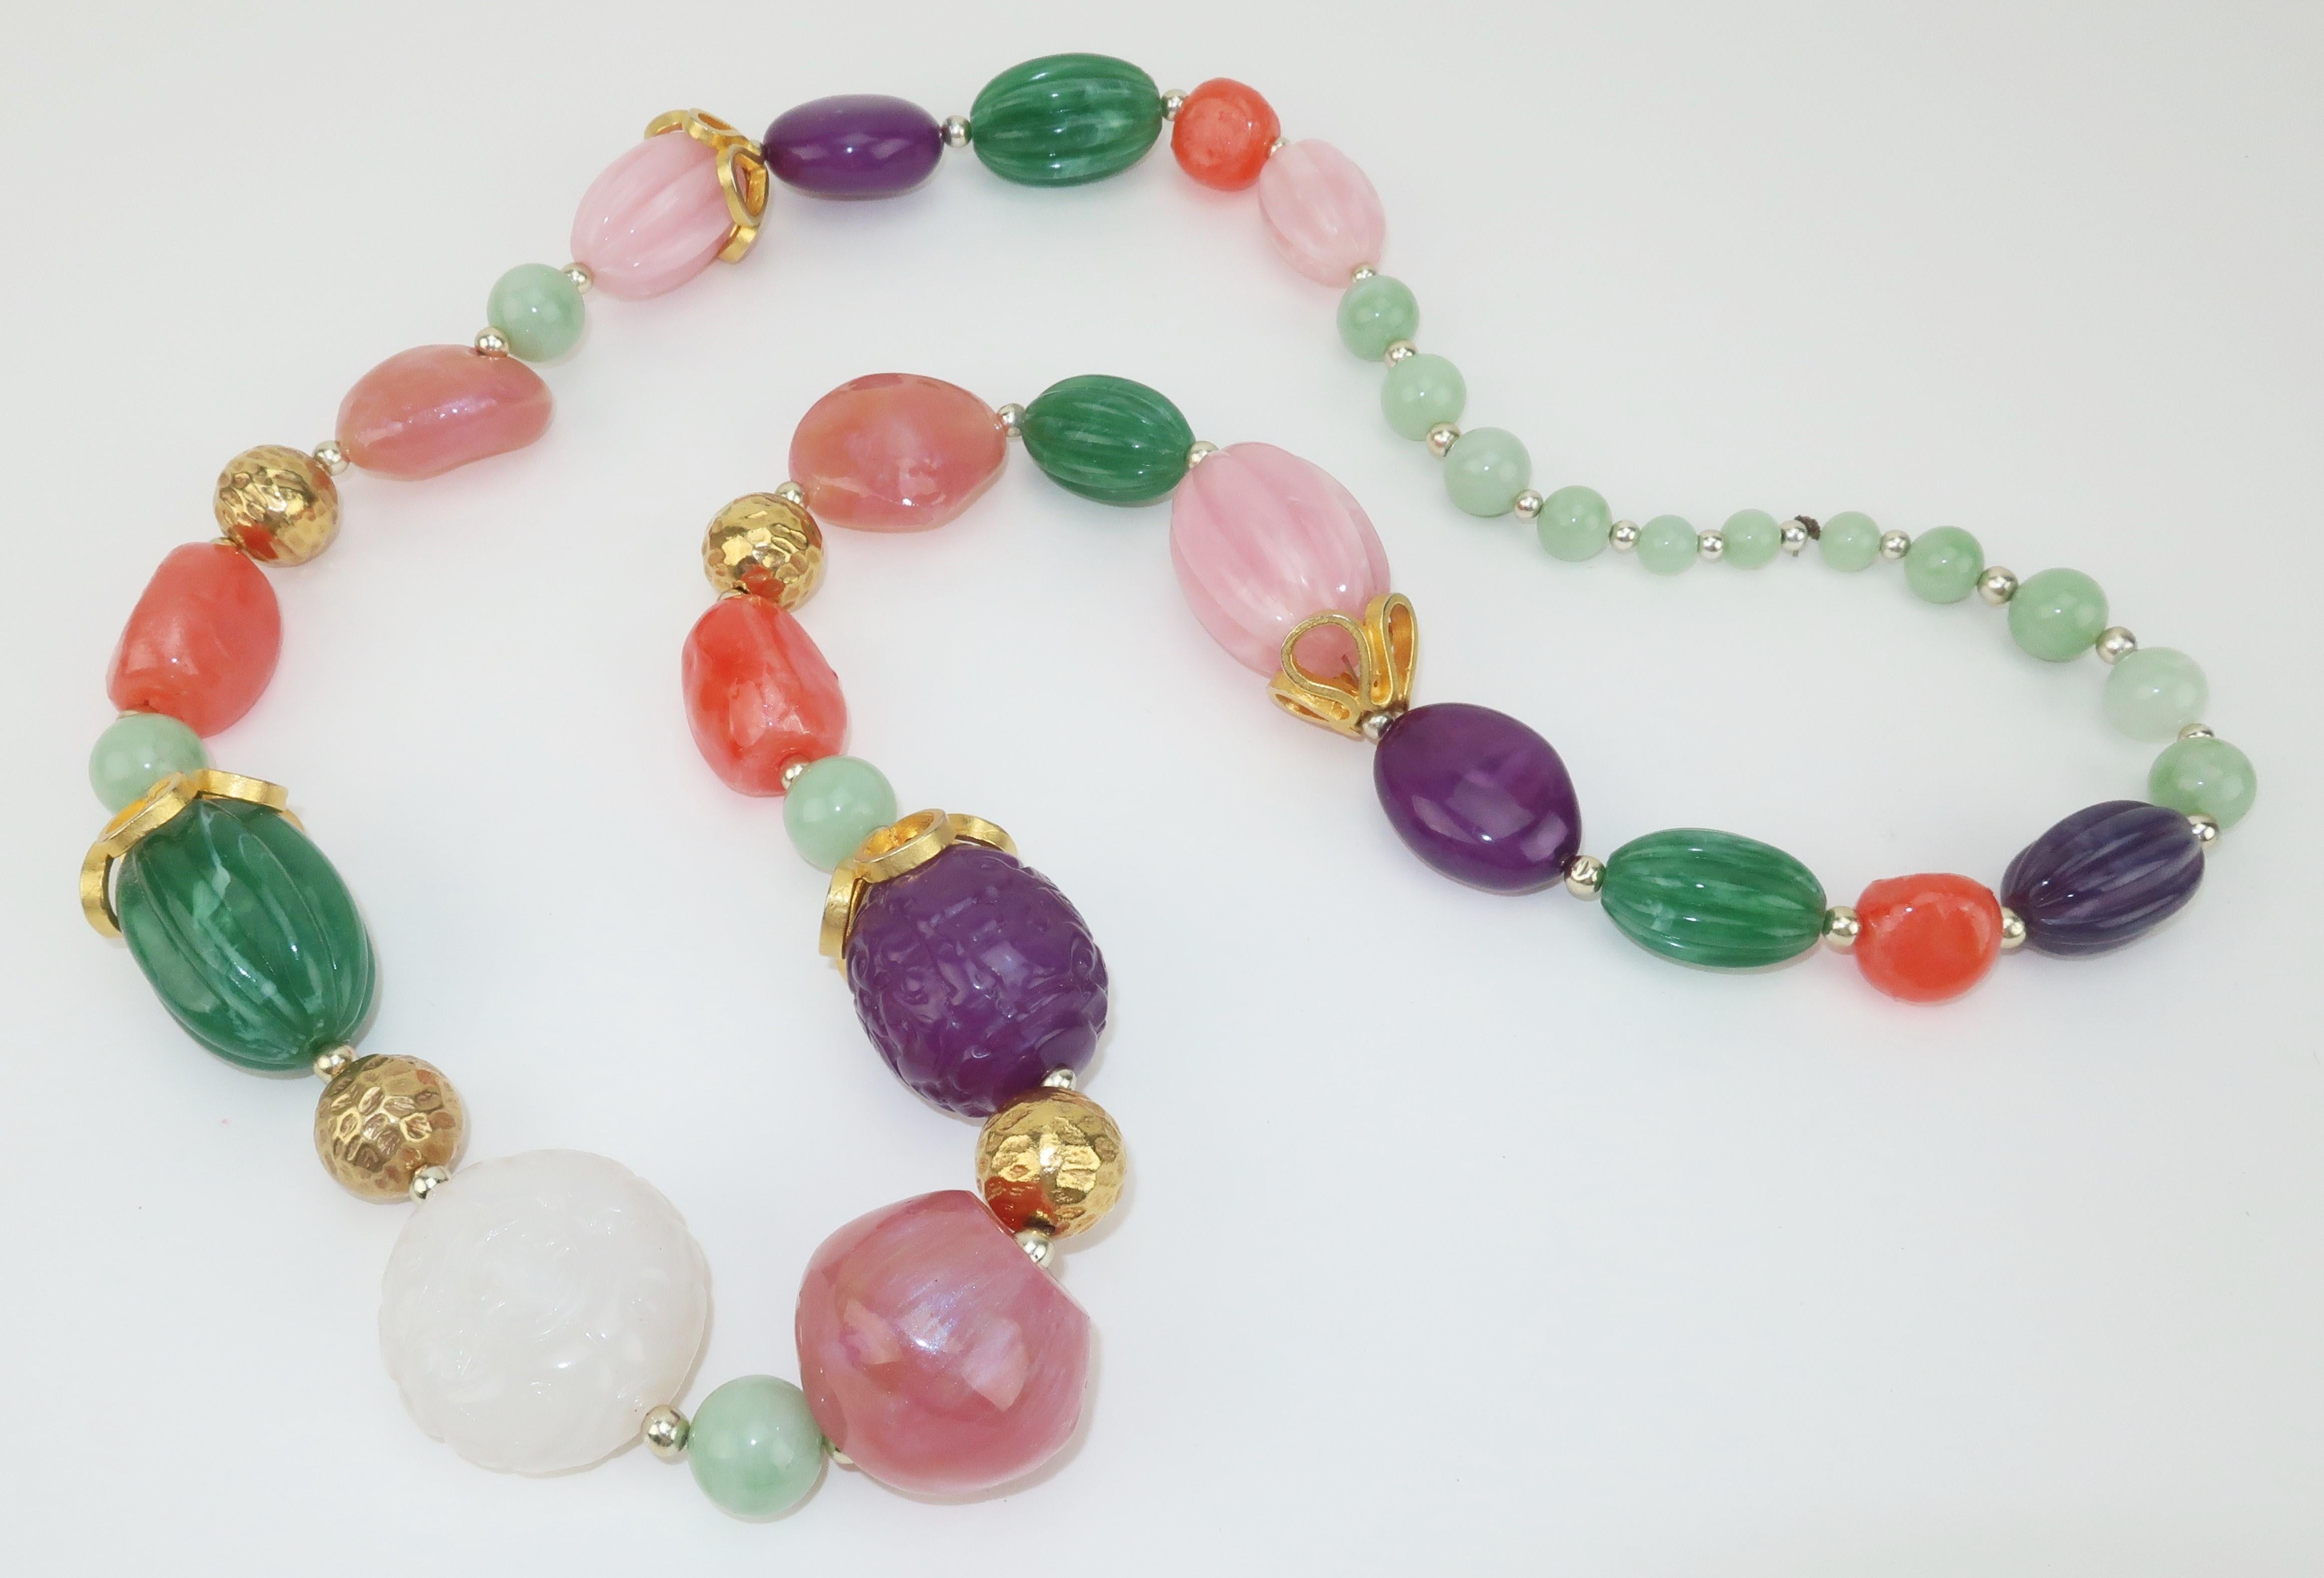 Collier de perles en résine massif des années 1980 ayant l'apparence de pierres semi-précieuses, accentué par des accessoires en métal doré et des perles à fossettes.  Certaines des 